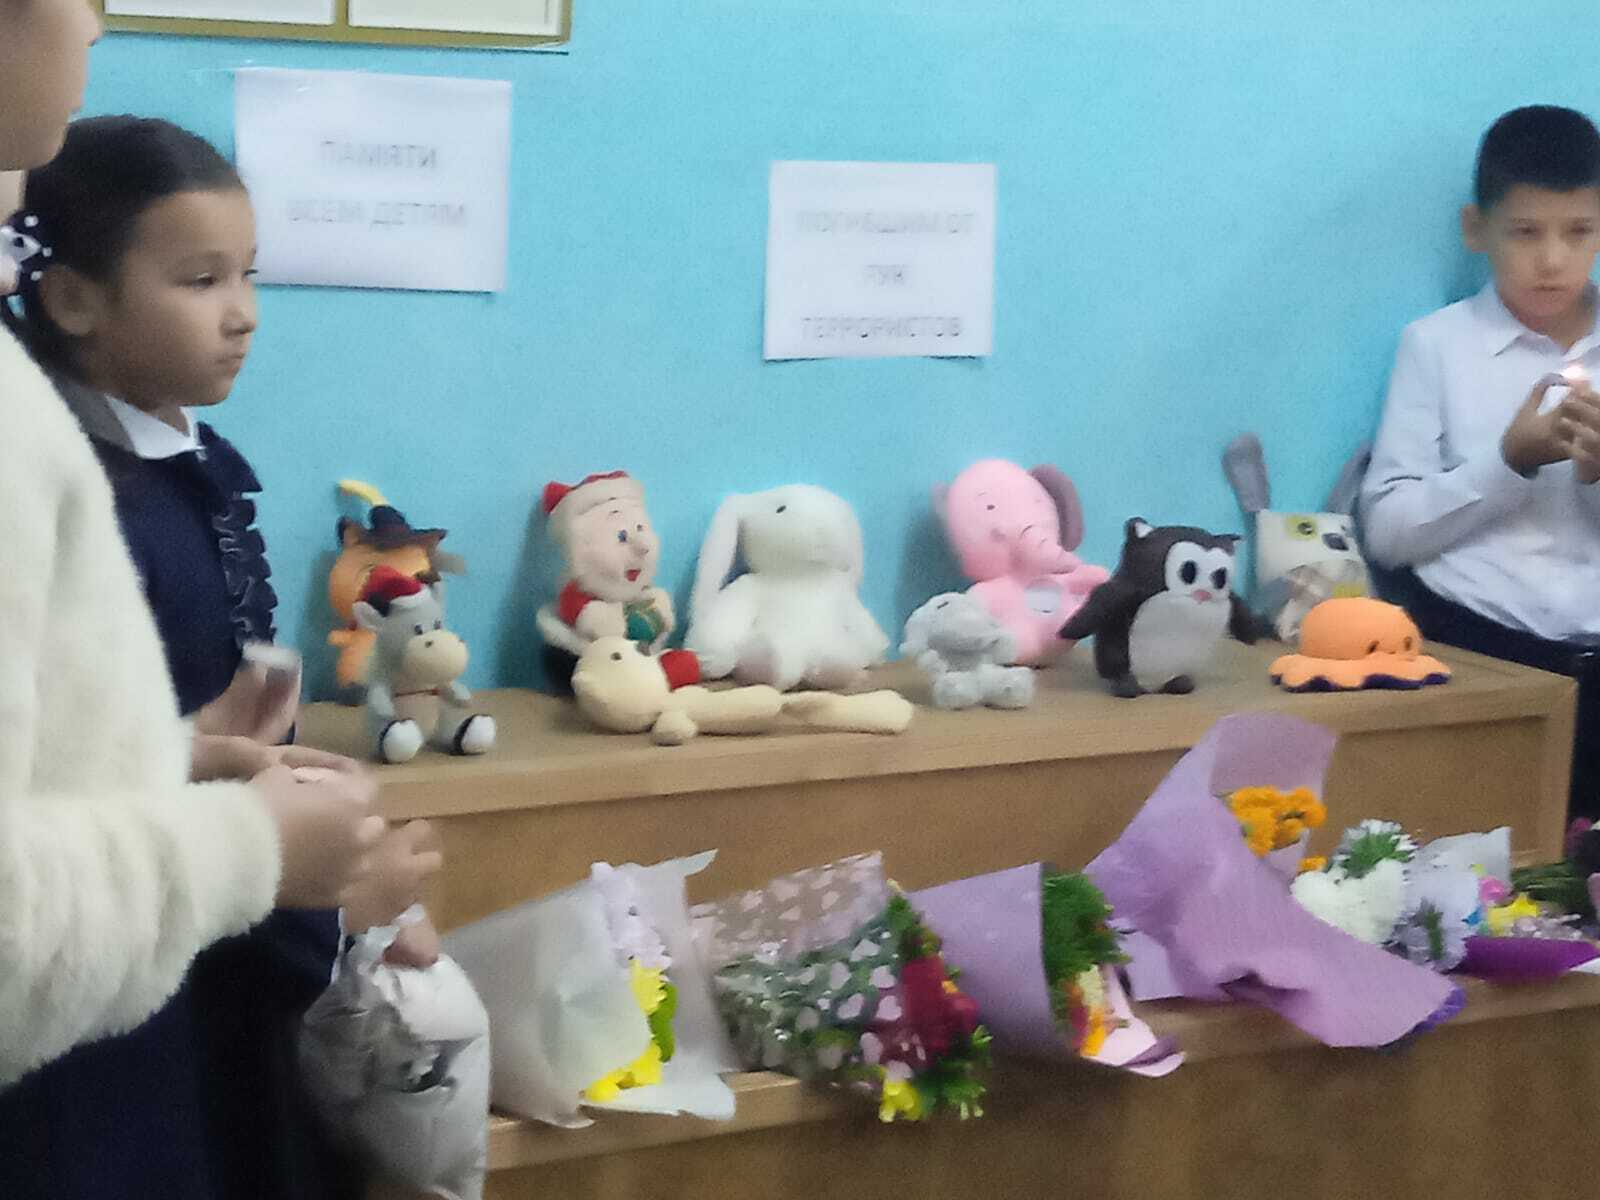 В память о трагедии в Беслане языковские школьники создали стену памяти, к которой несли игрушки и цветы